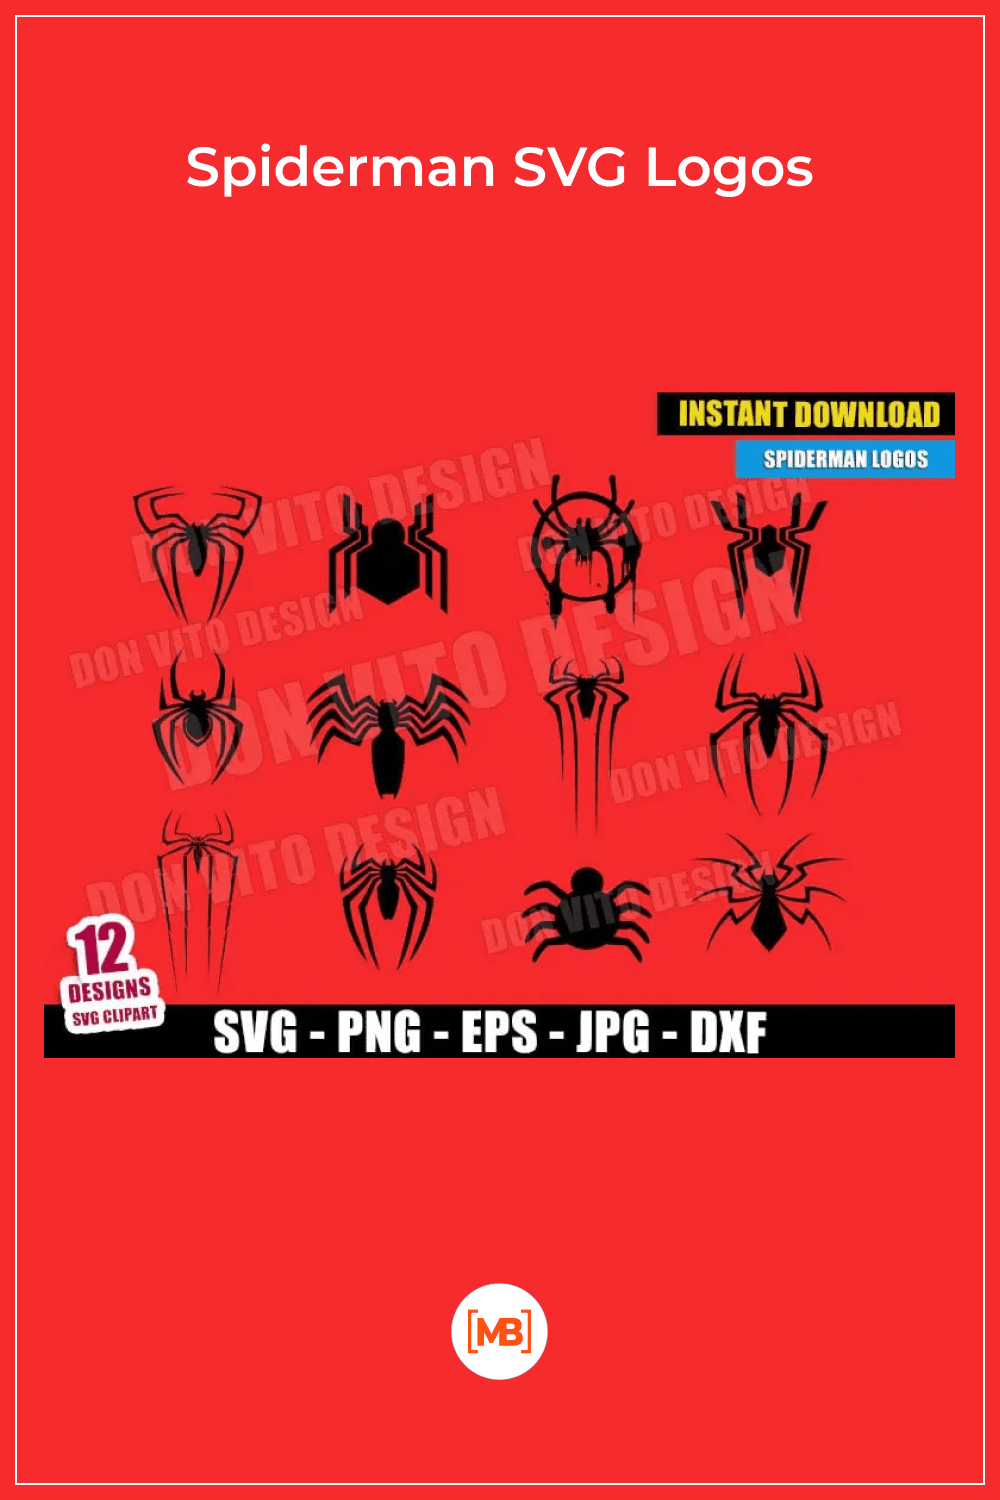 Spiderman SVG Logos.